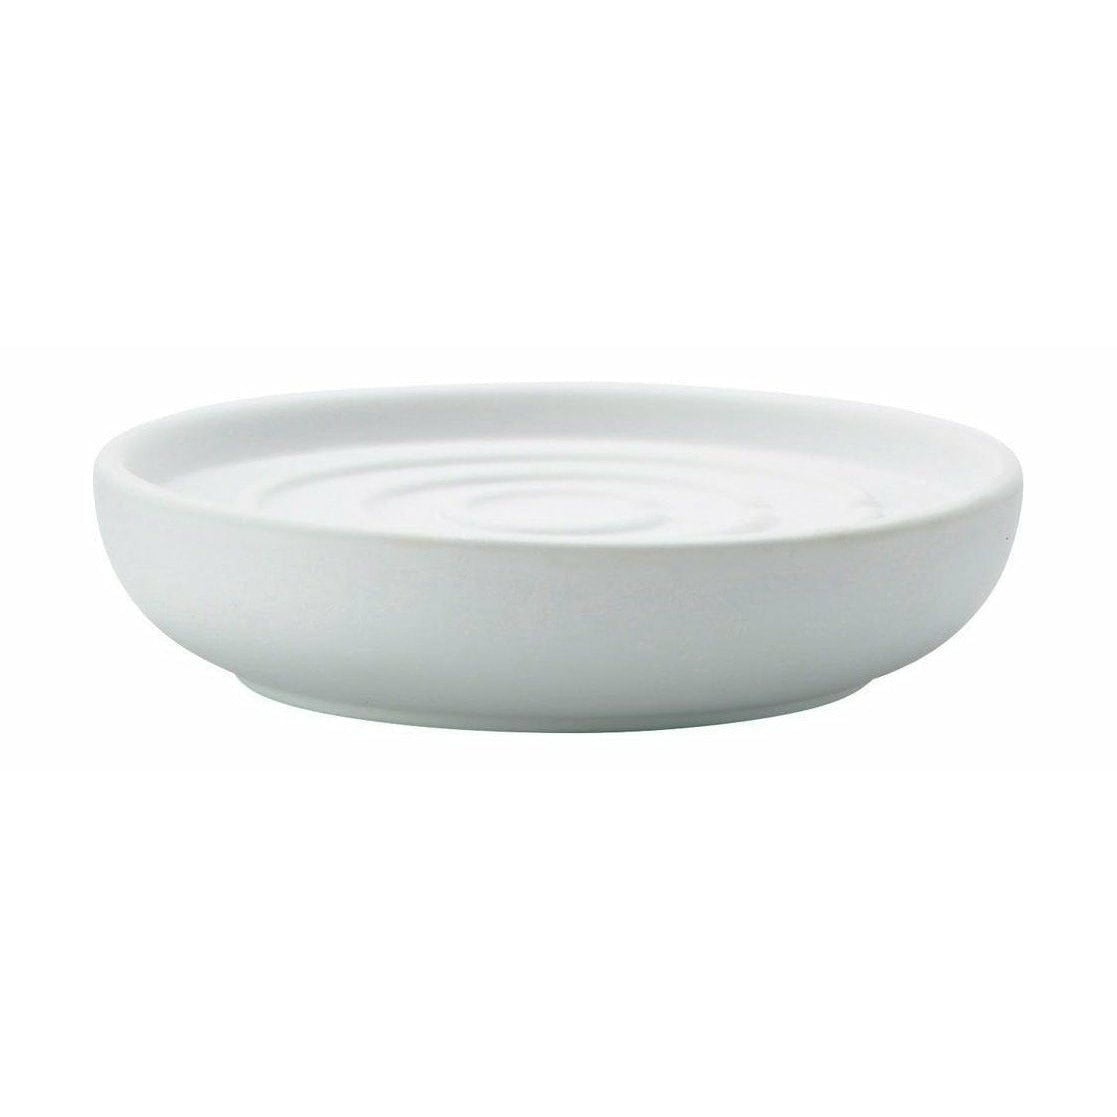 Zone Danmörk Nova Soap Dish, White